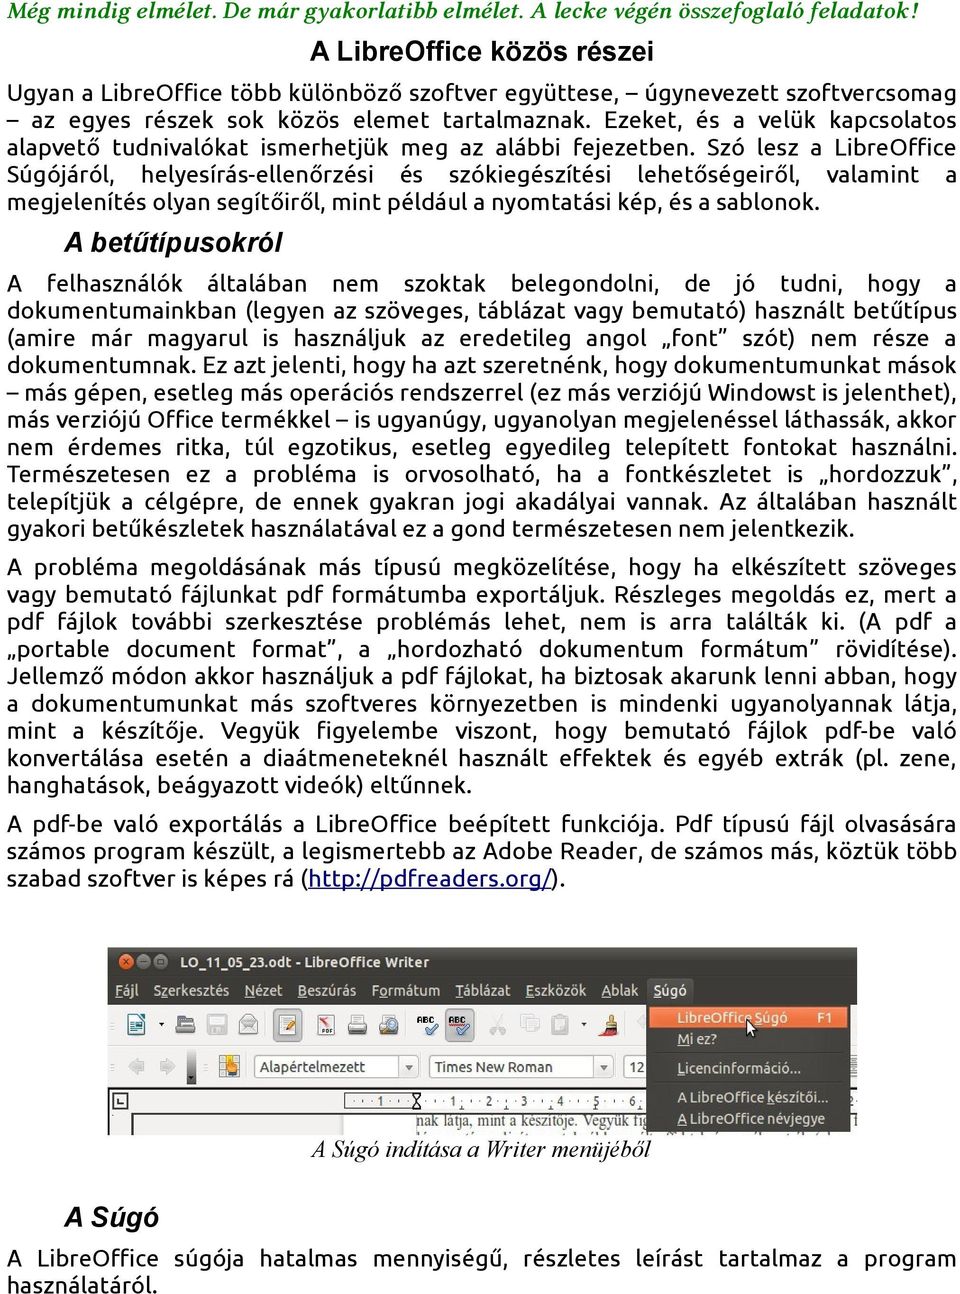 A LibreOffice közös részei - PDF Ingyenes letöltés